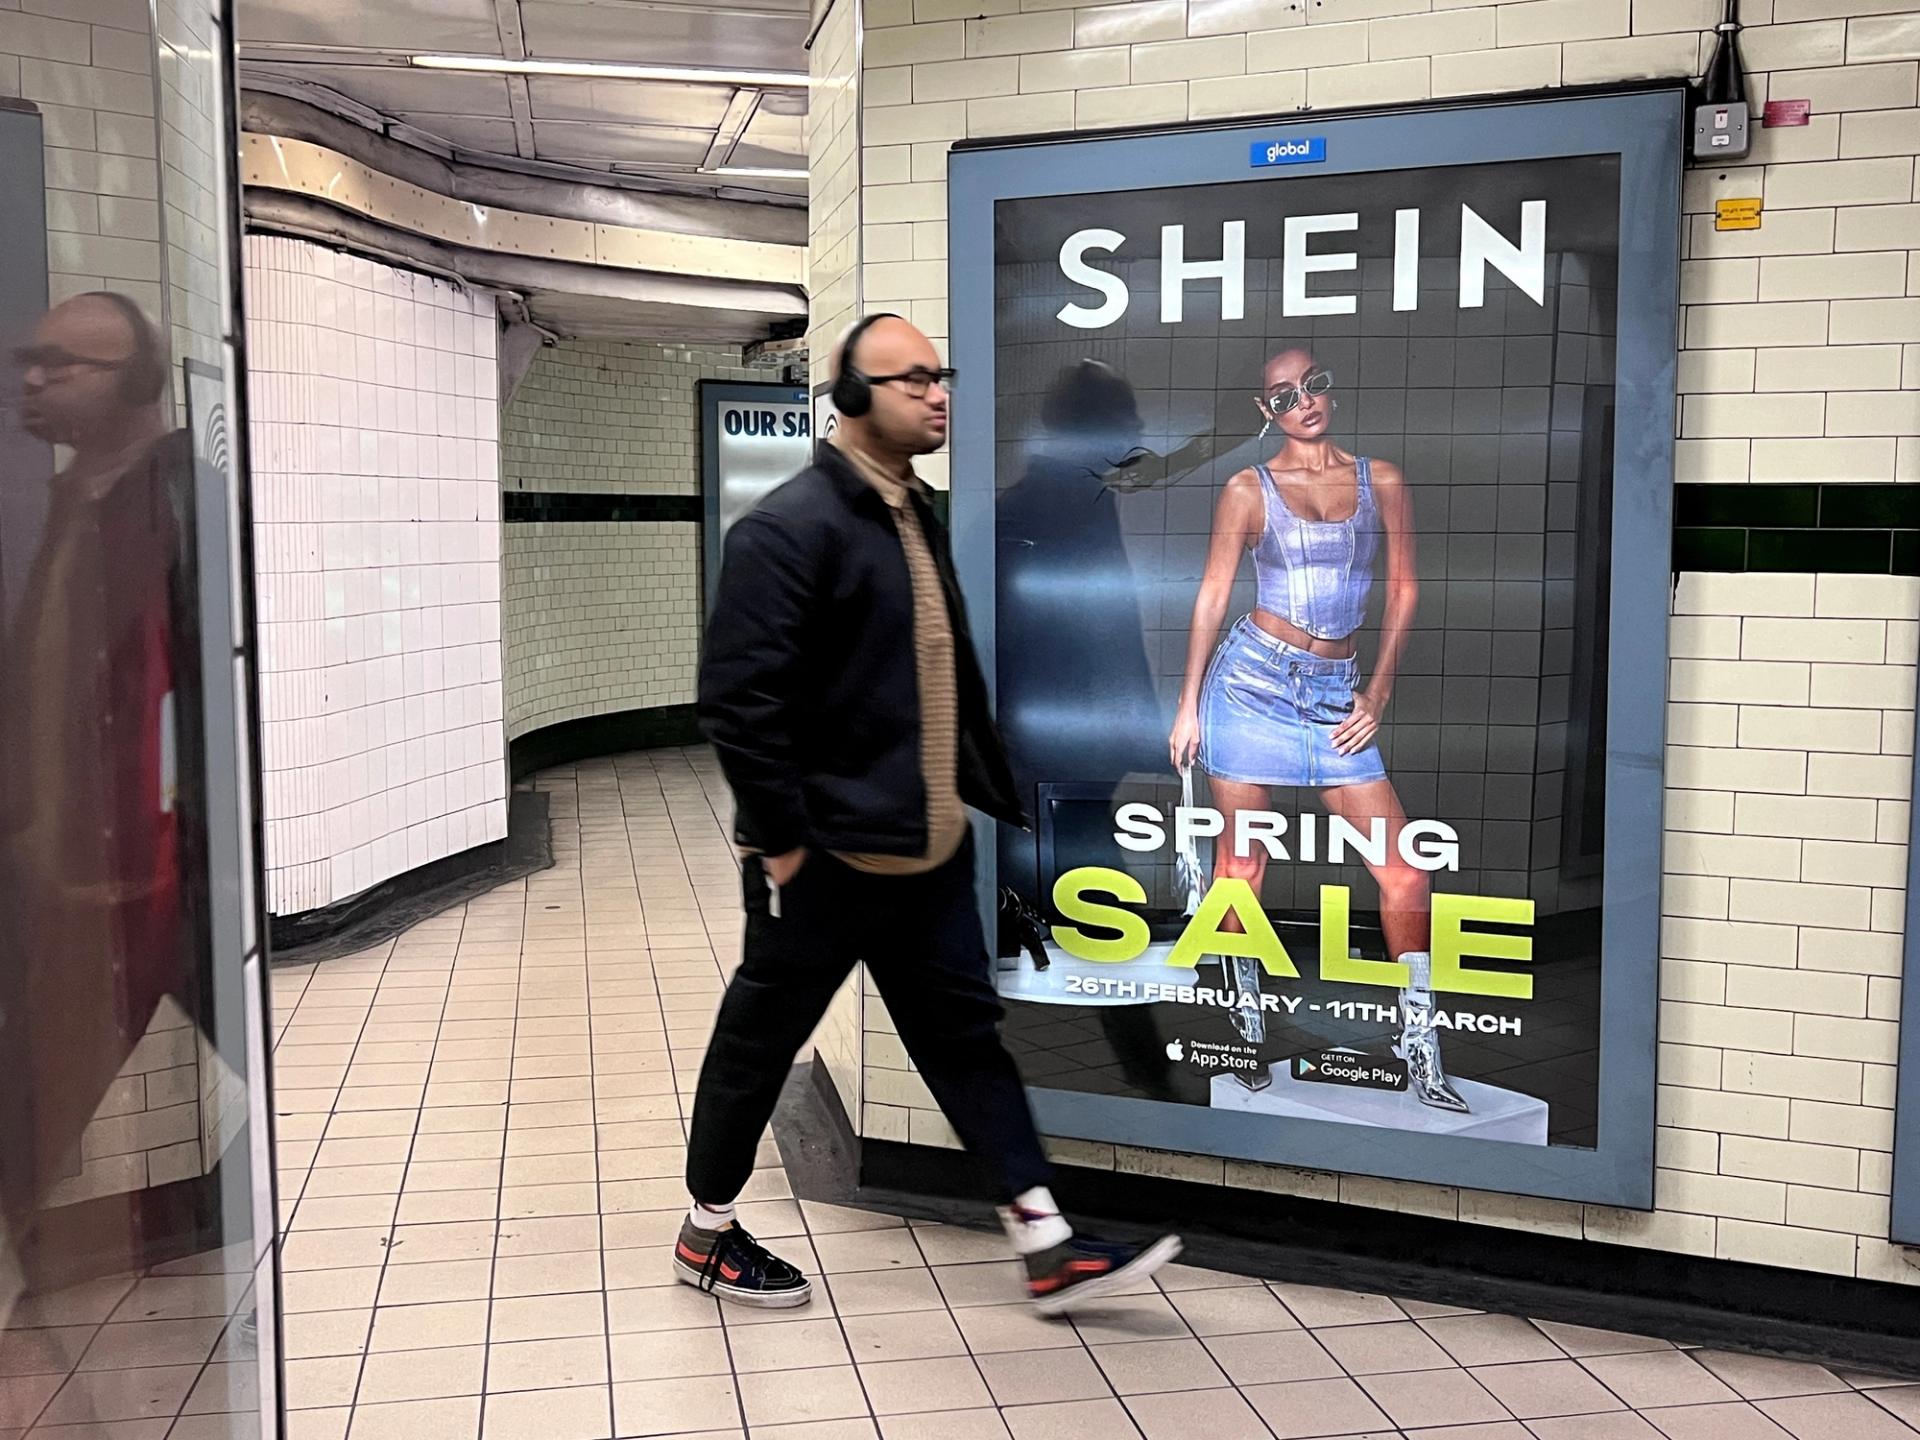 A Shein advert in London.